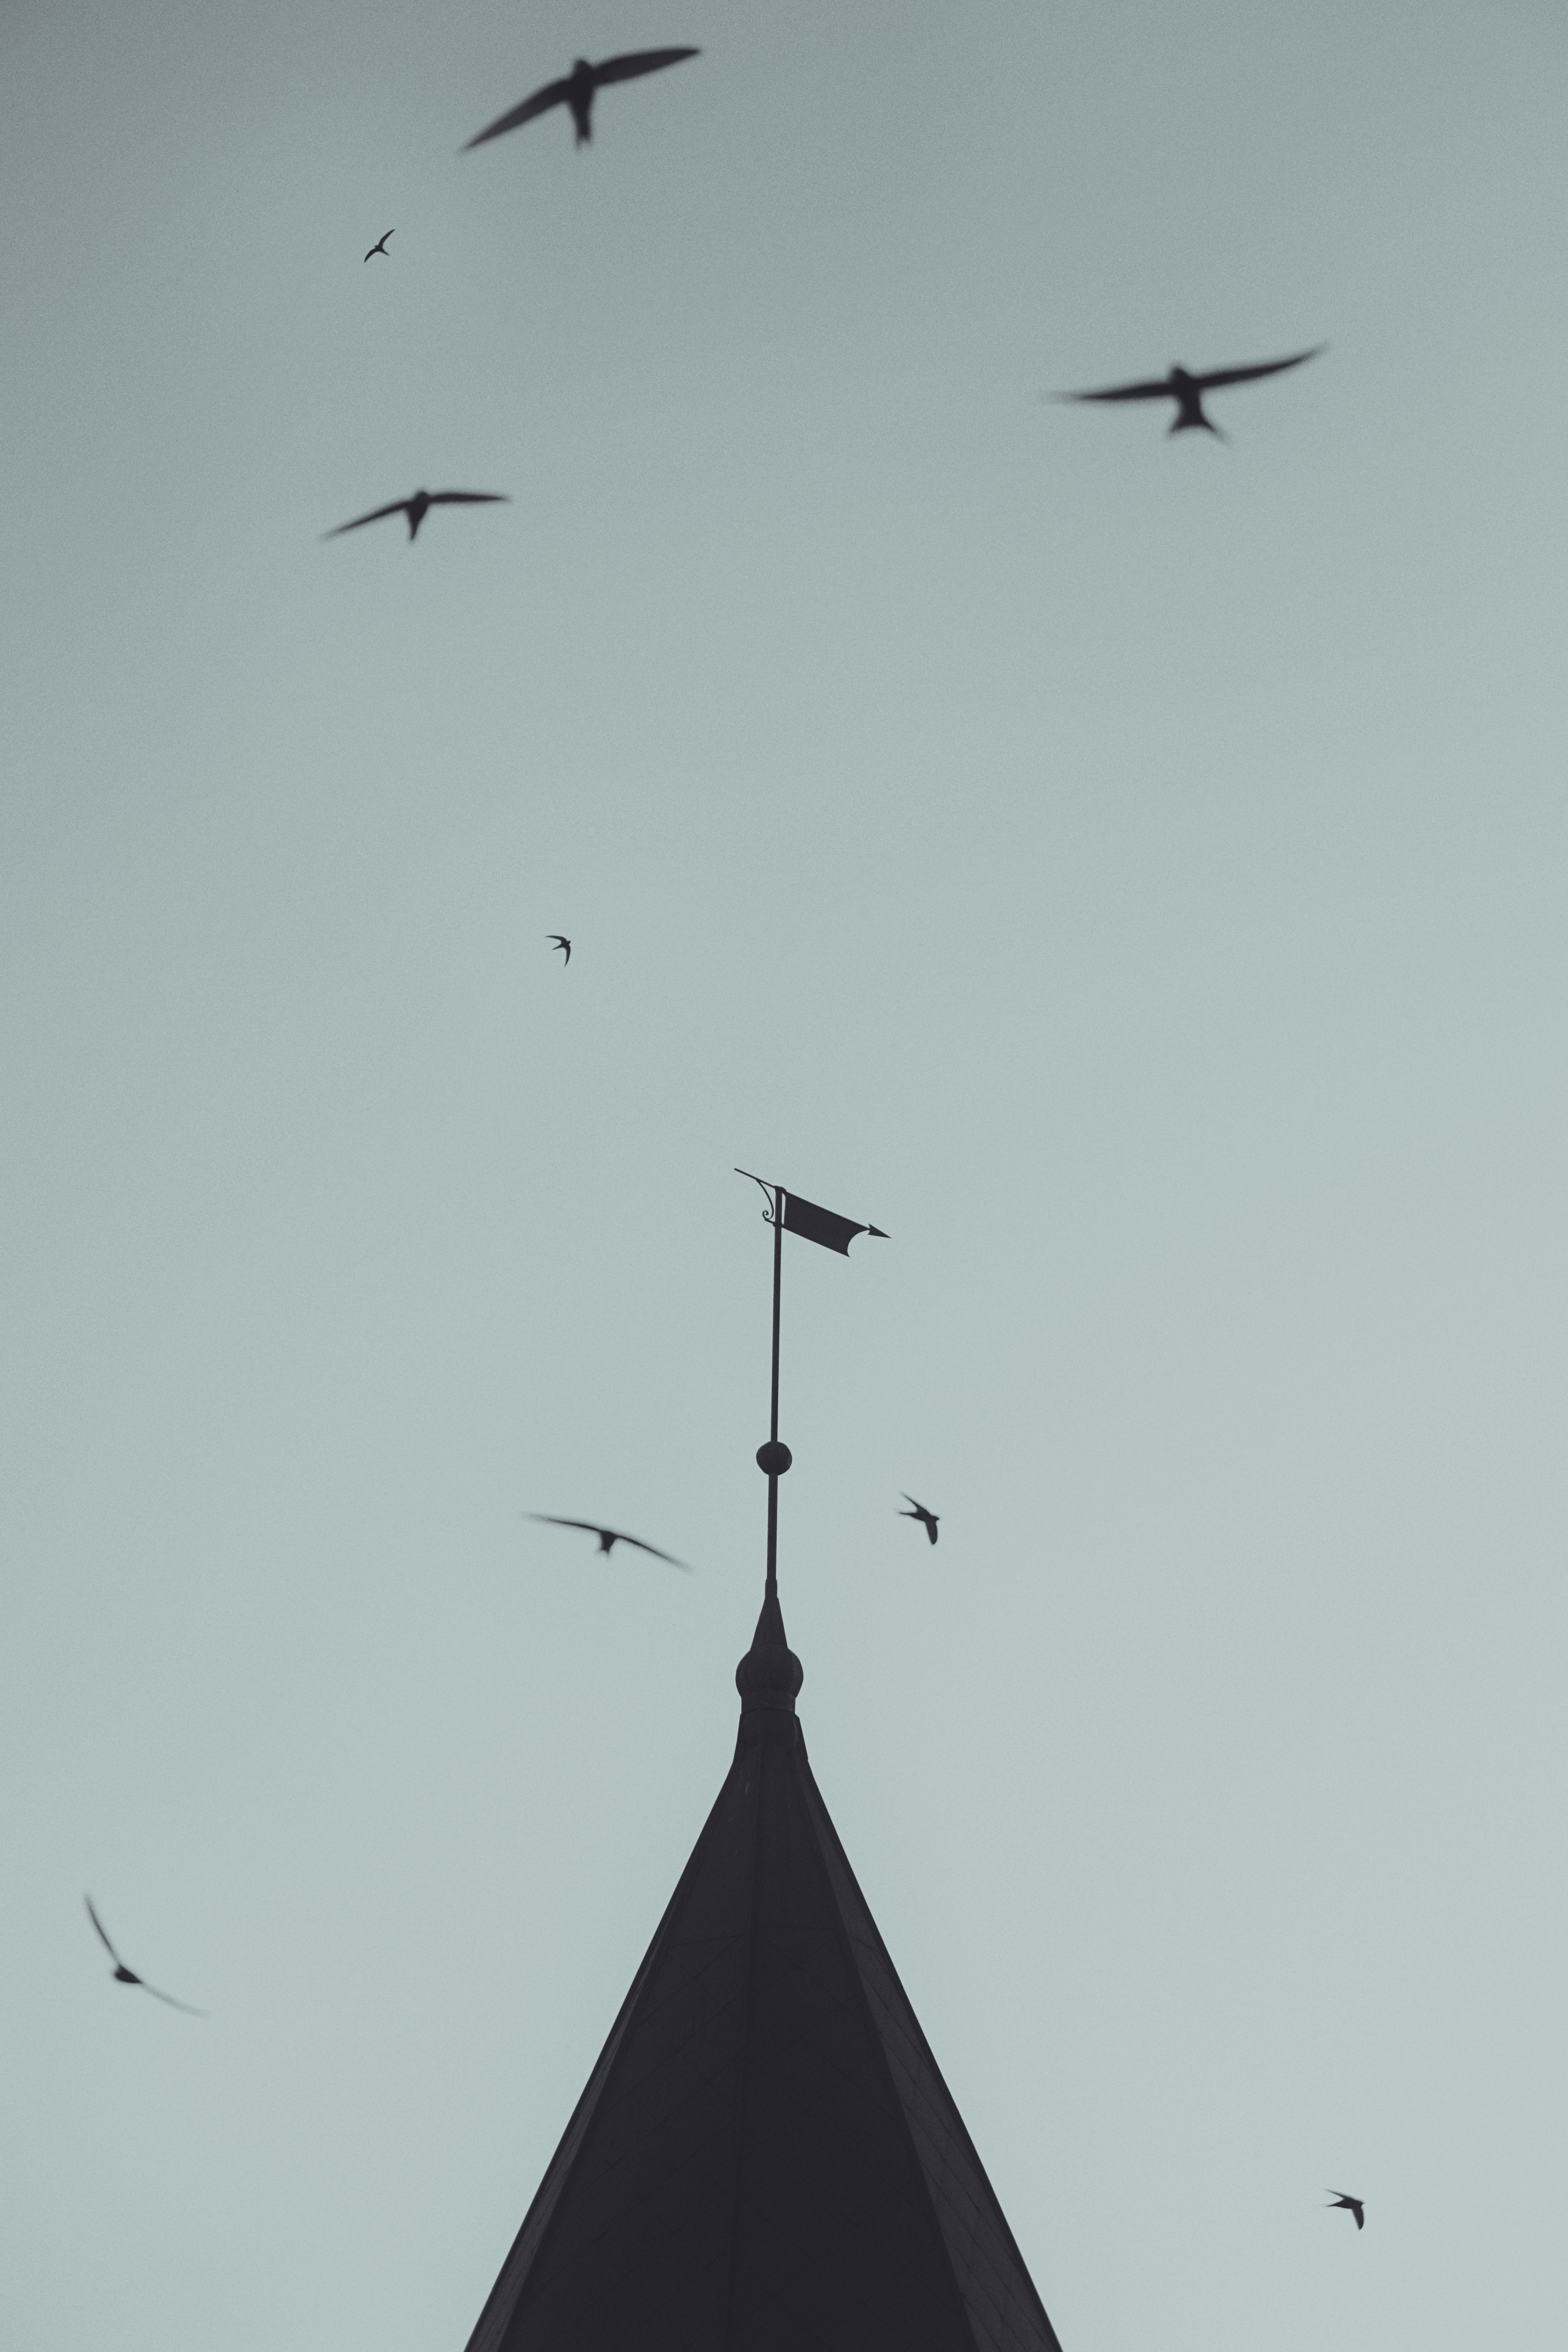 birds flying over the street light during daytime